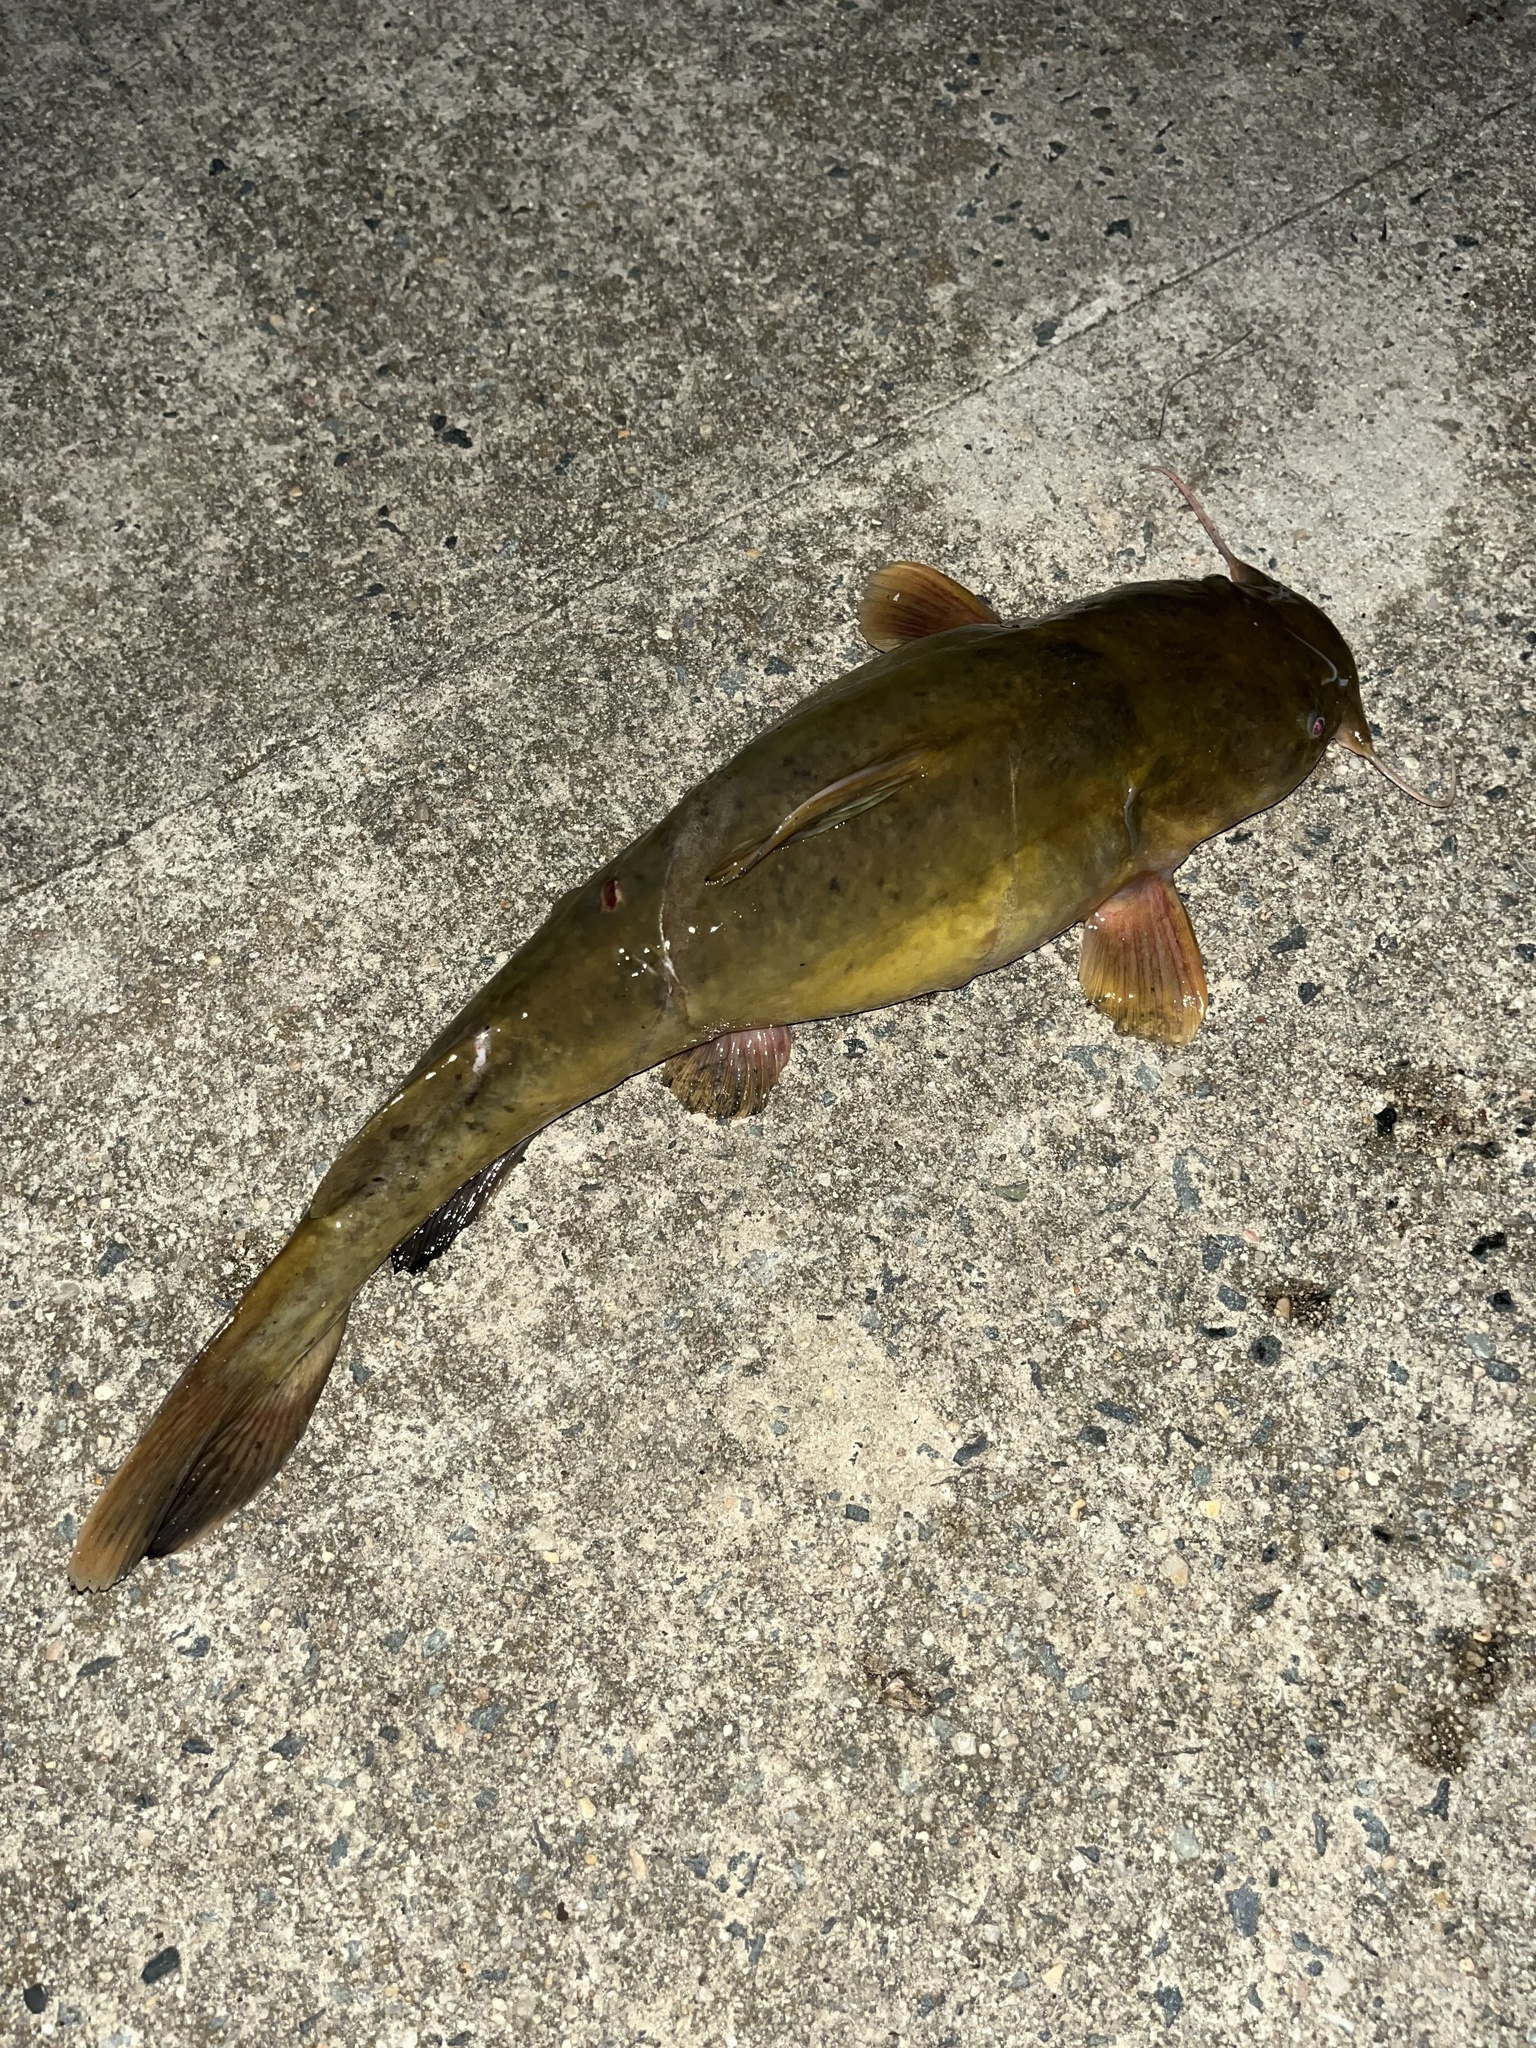 Maryland Biodiversity Project - Flathead Catfish (Pylodictis olivaris)